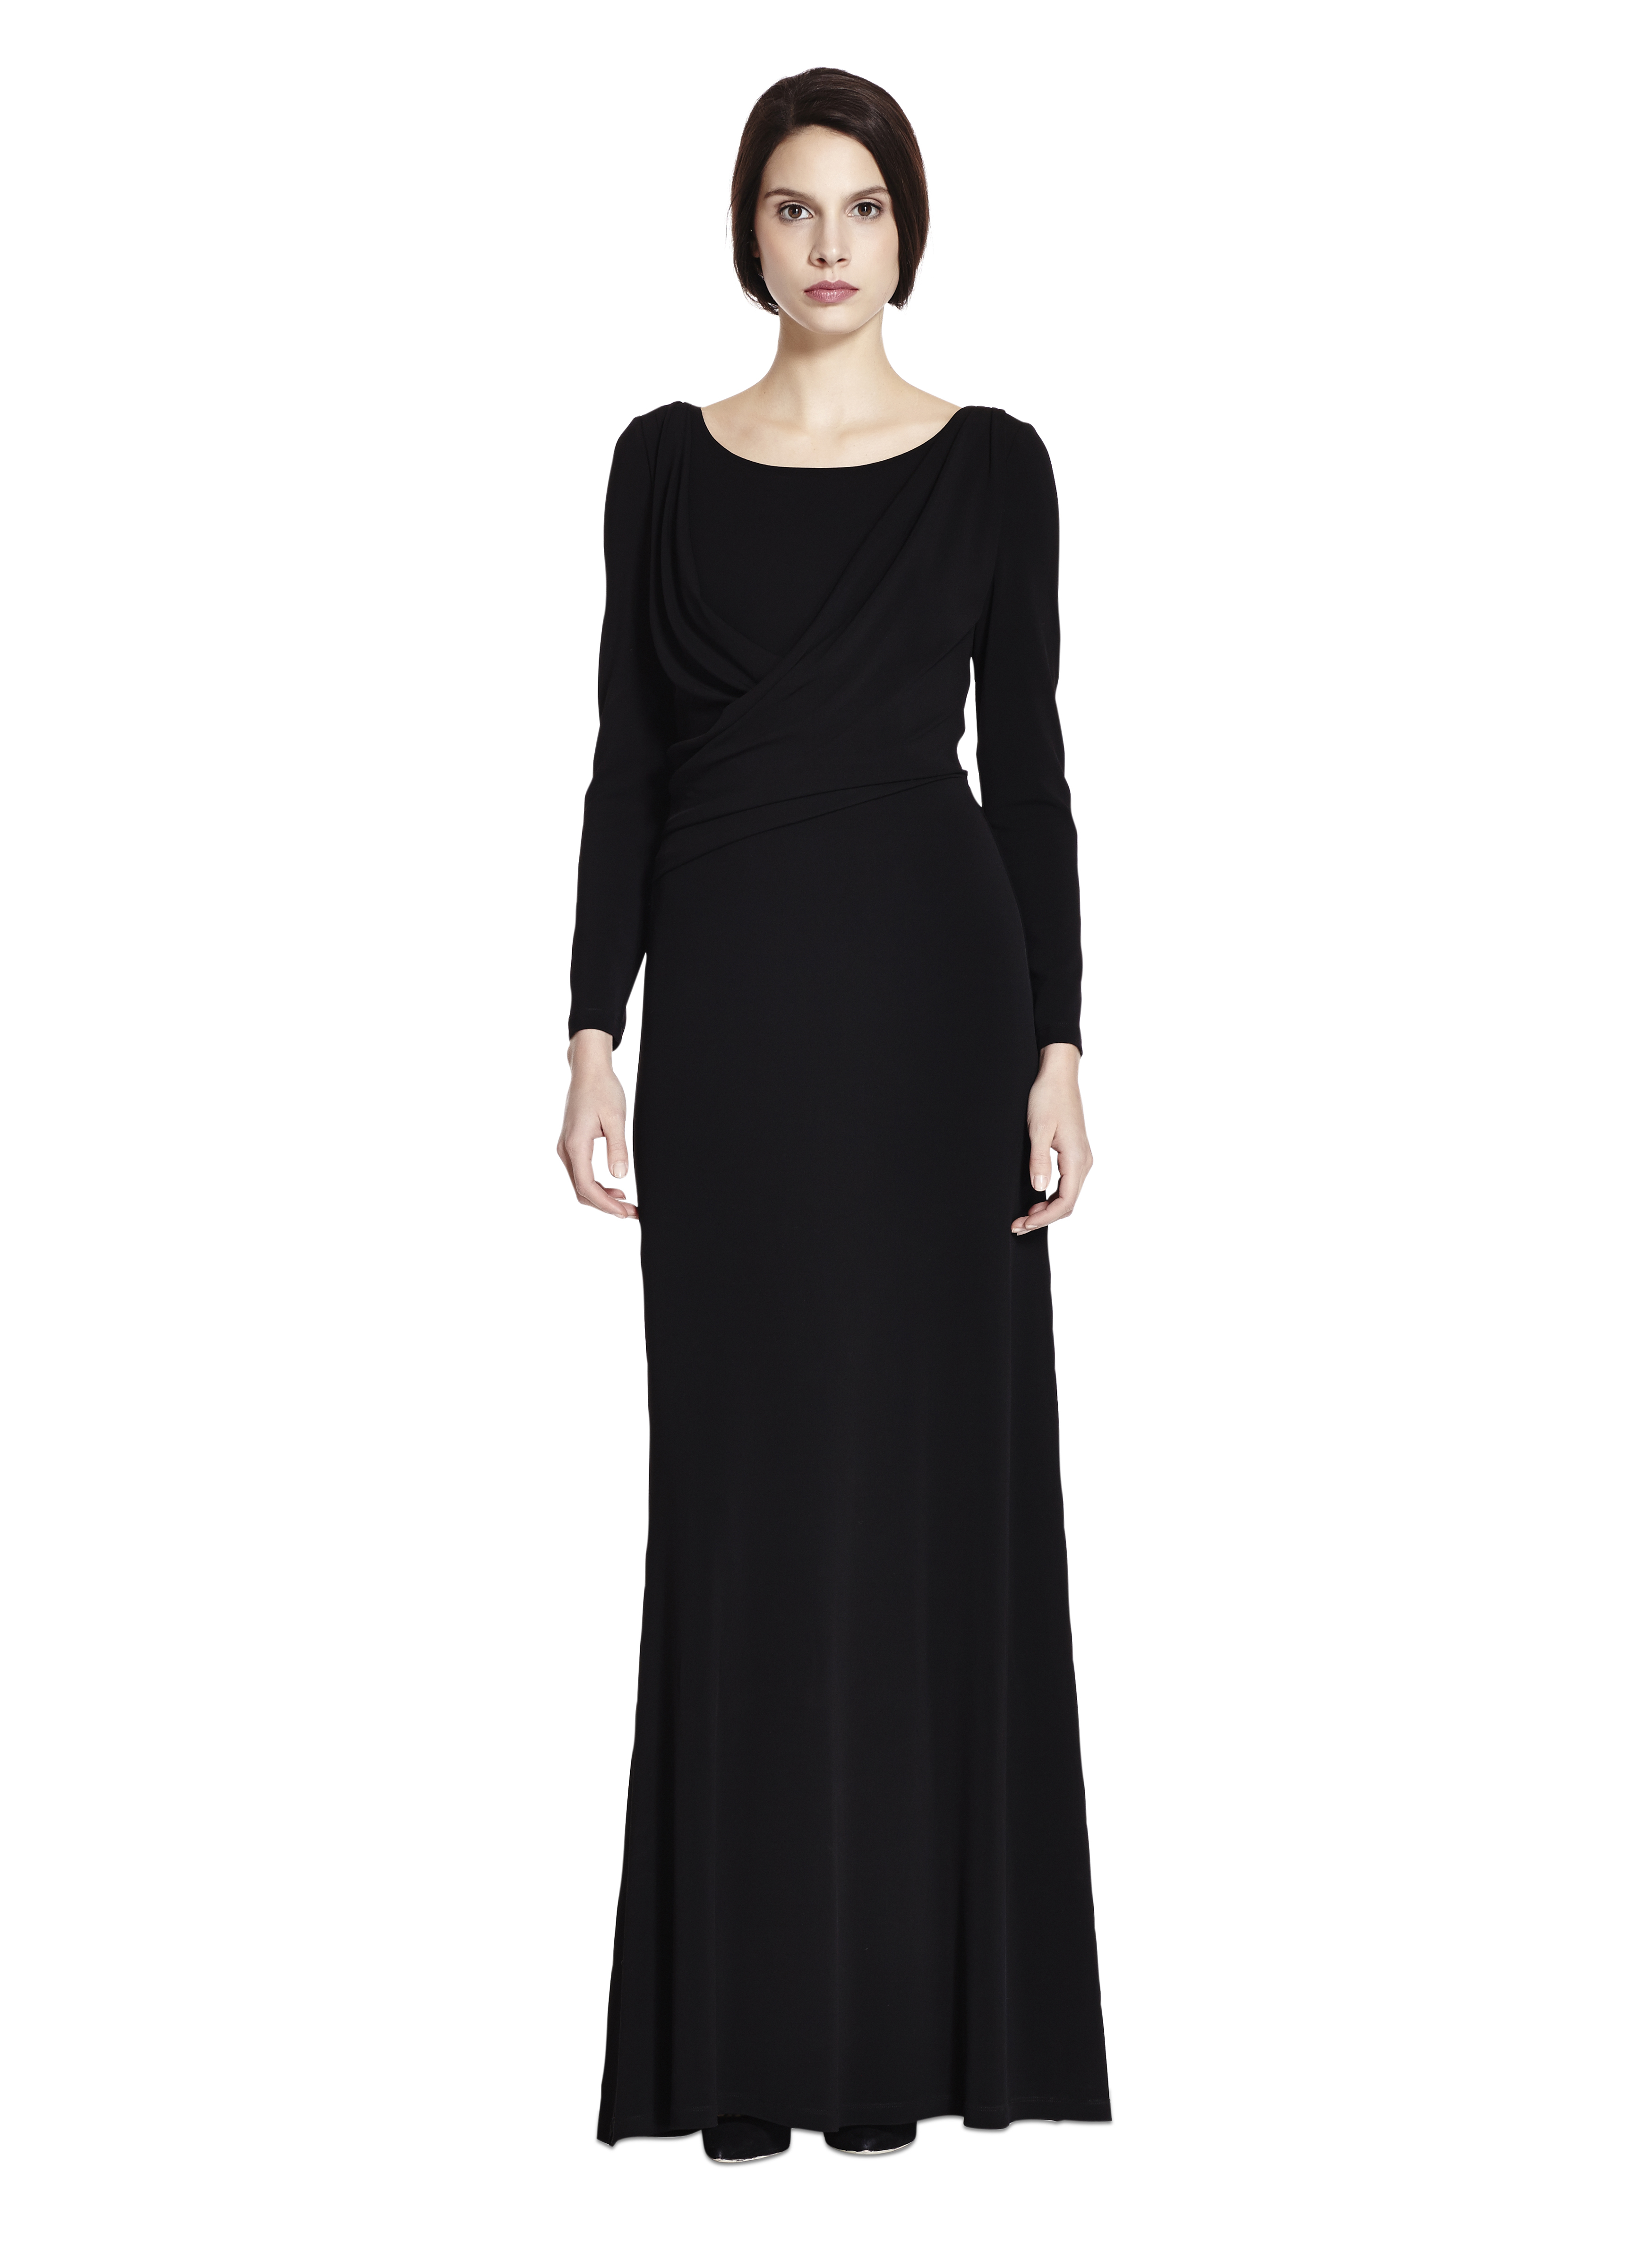 Alberta ferretti Long Sleeve Maxi Dress in Black | Lyst